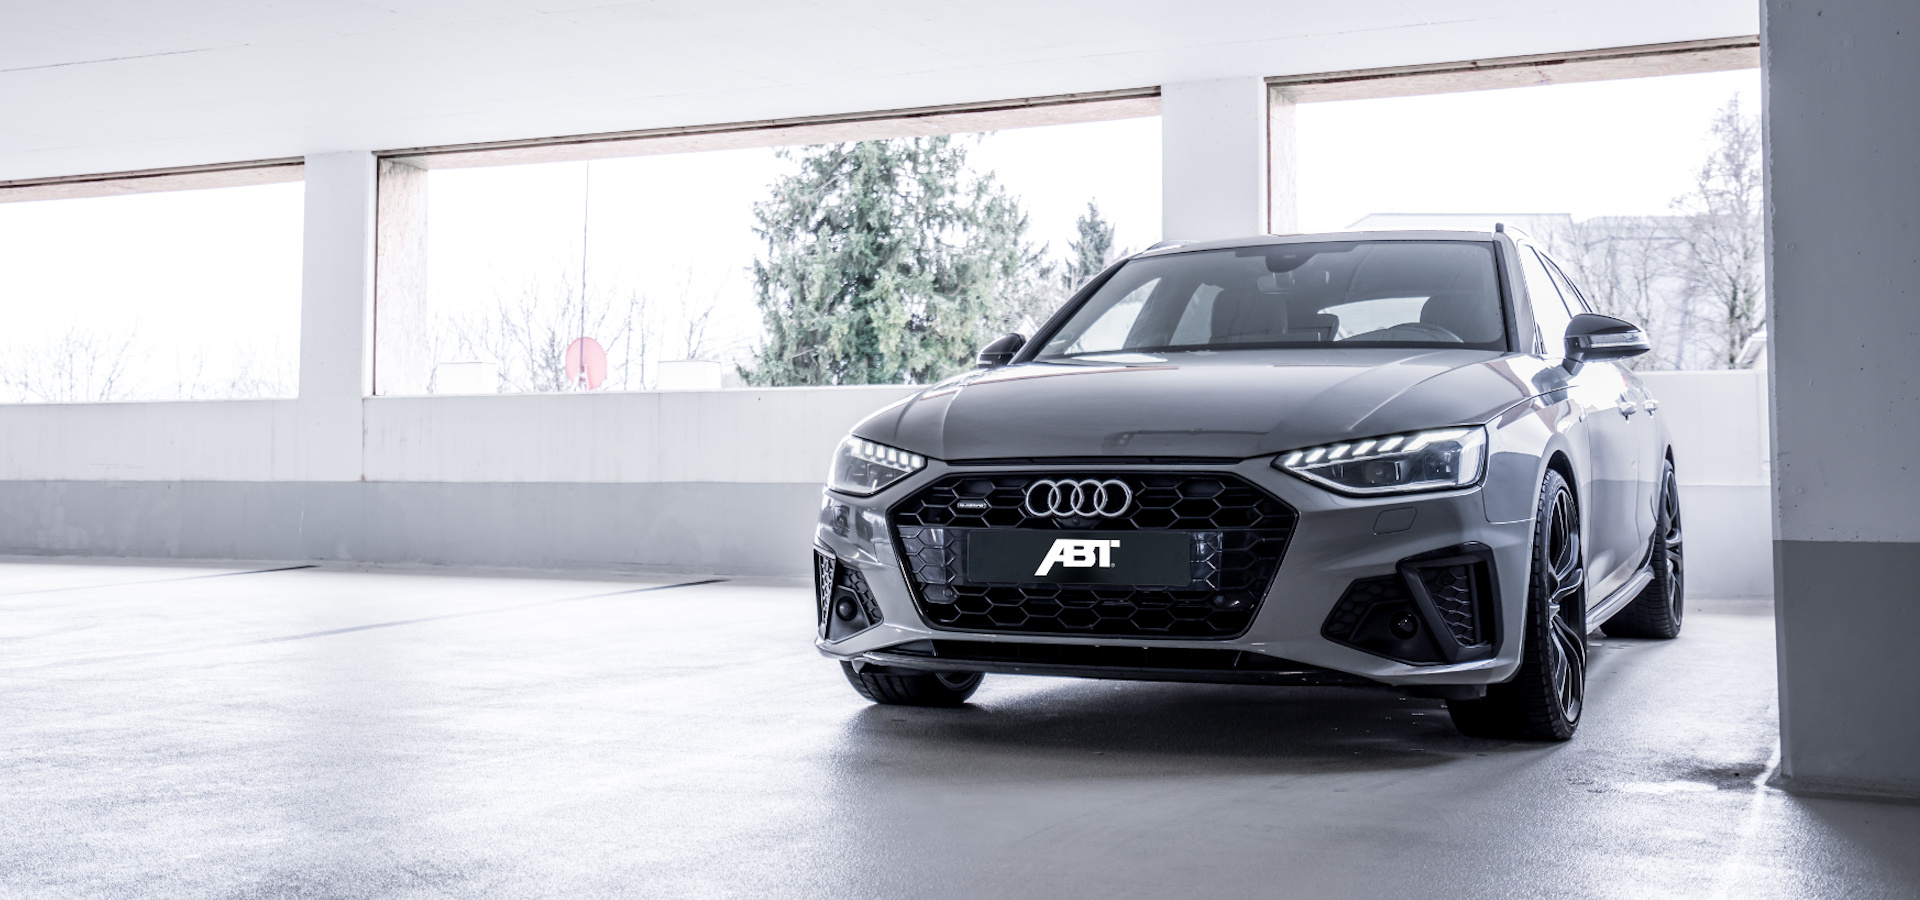 Audi A4 1.9 TDI B5 110 PS specs, performance data 